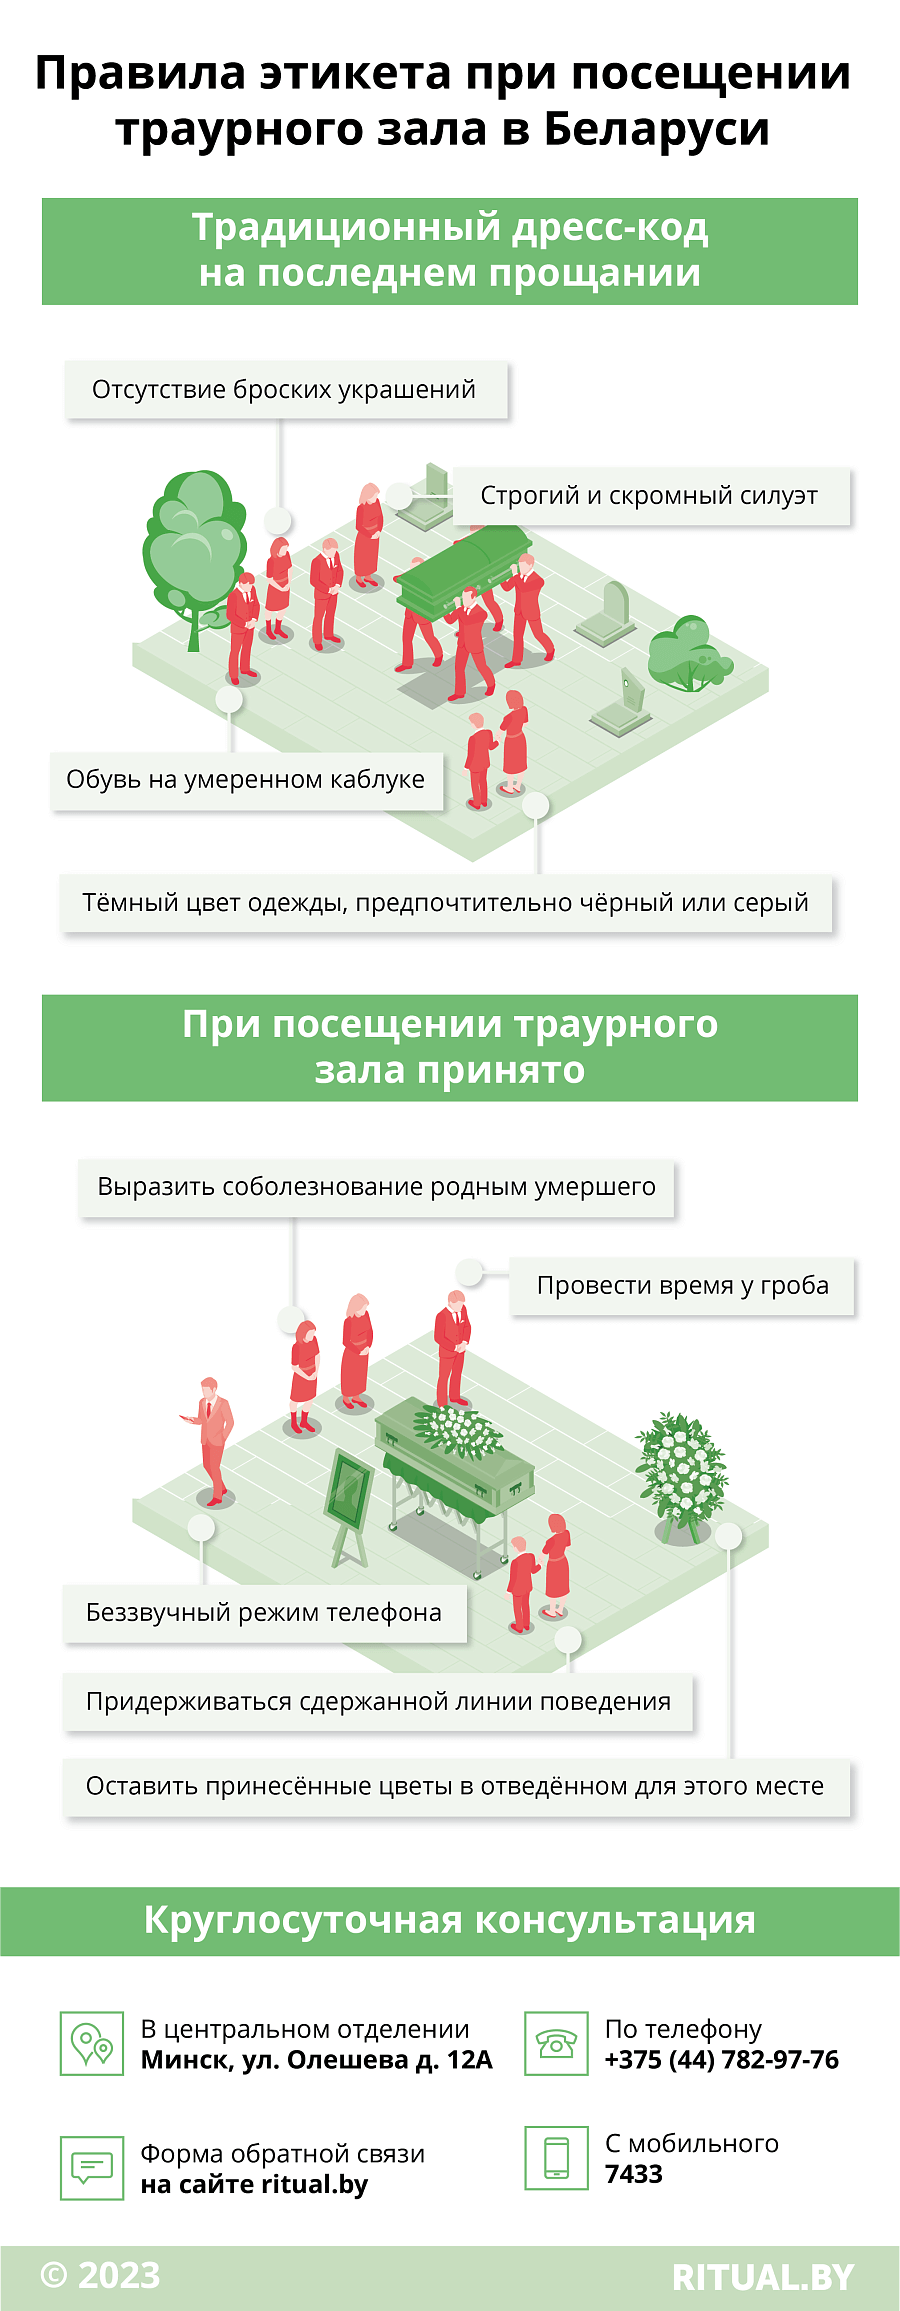 Правила этикета при посещении траурного зала в Беларуси